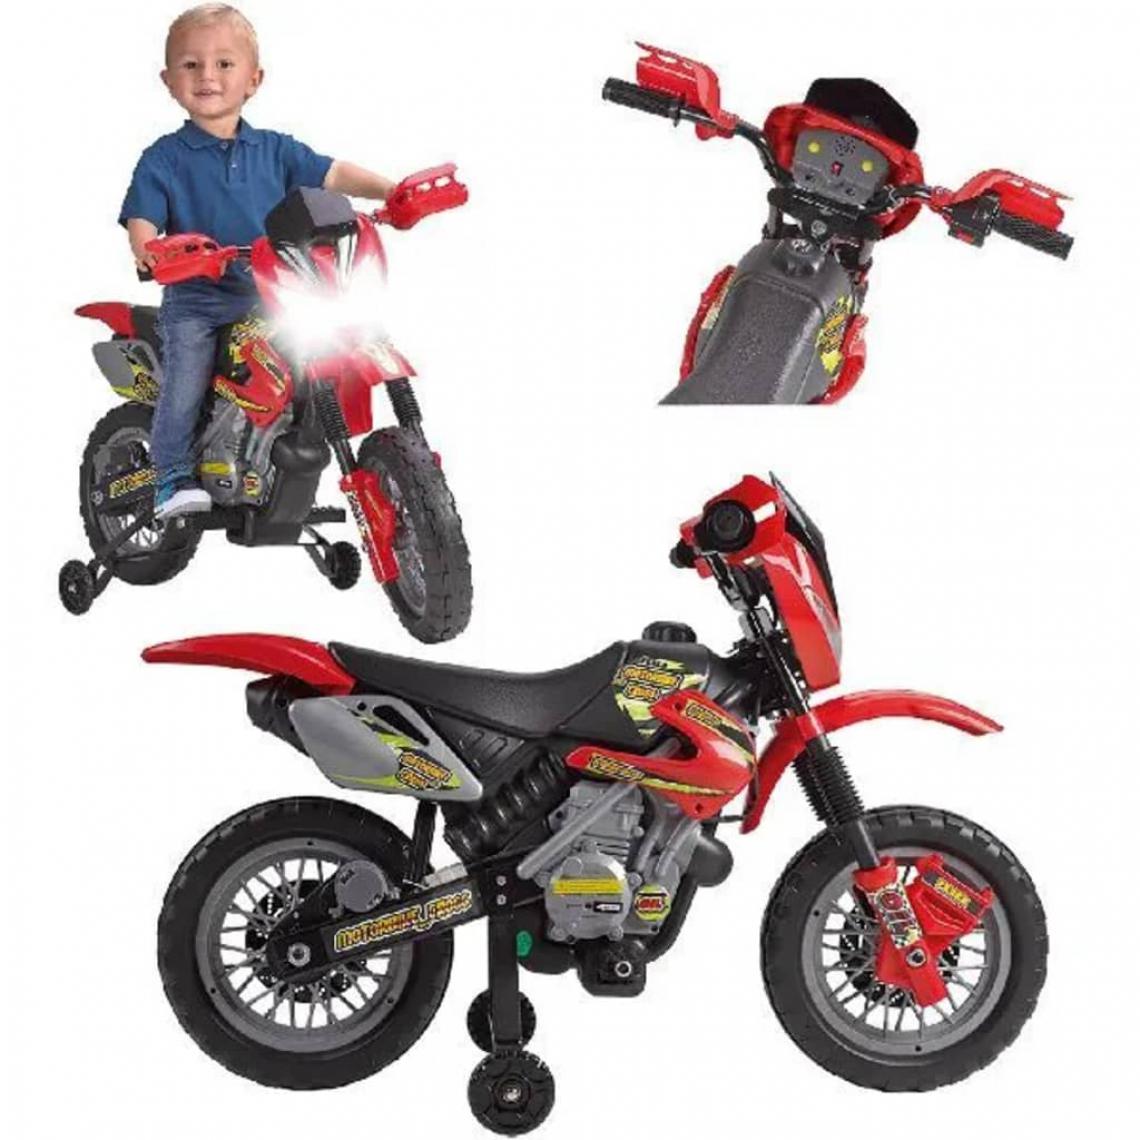 Feber - Mini moto cross 6V de Feber modo cross électrique pour enfant - Véhicule électrique pour enfant